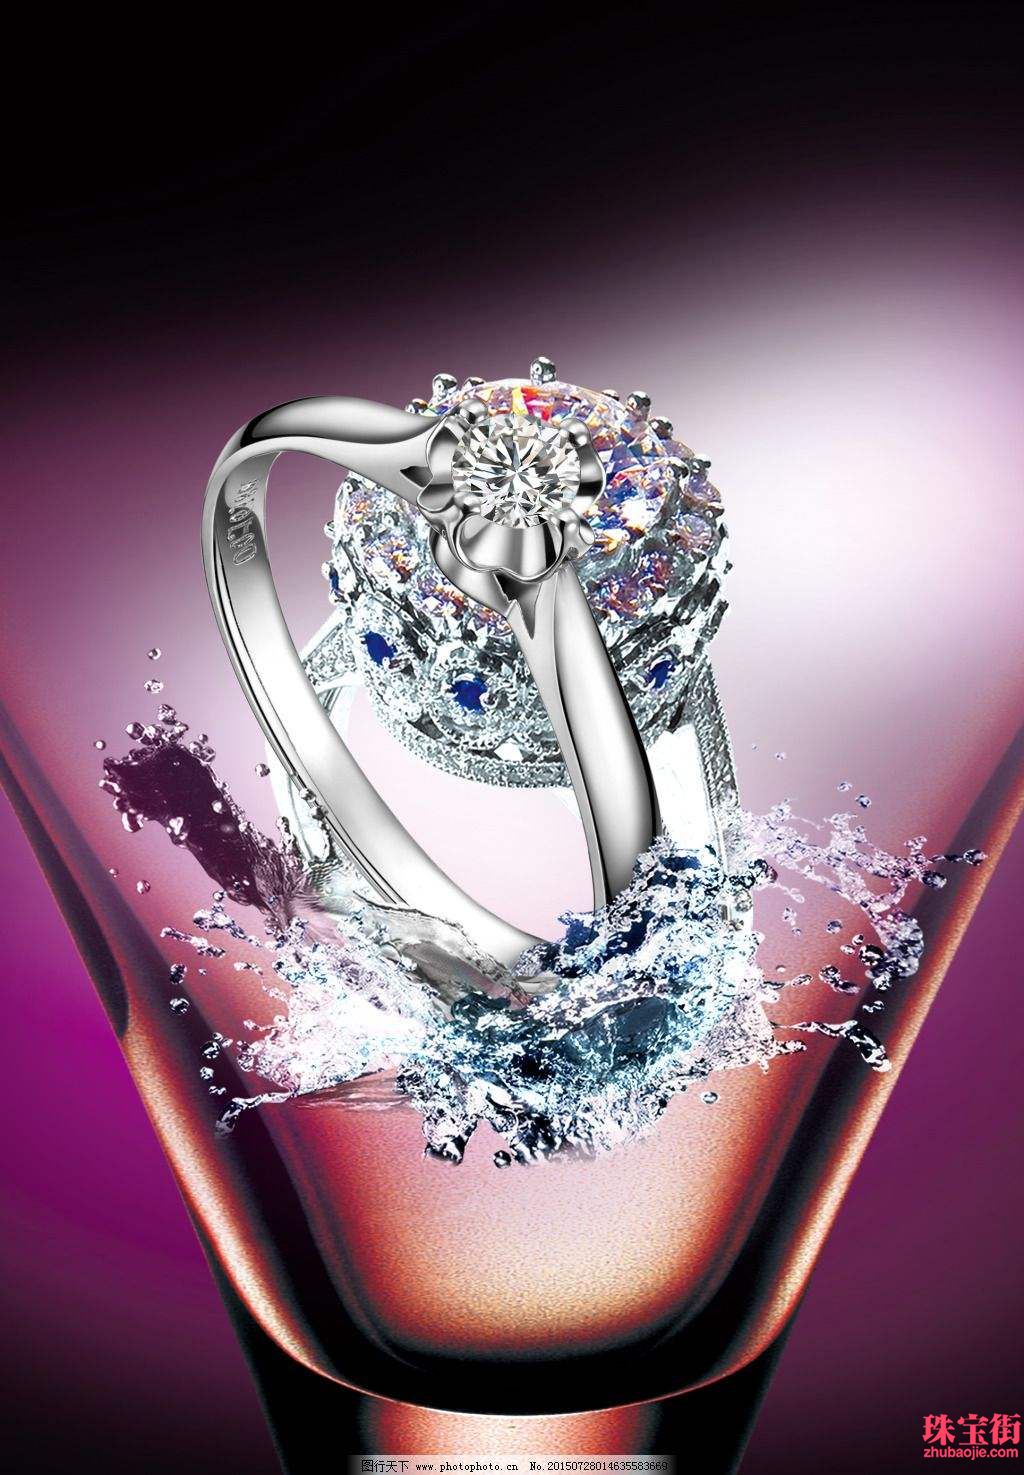 BVLGARI 宝格丽 | 高级珠宝系列 Barocko 彩色宝石胸针-第一黄金网